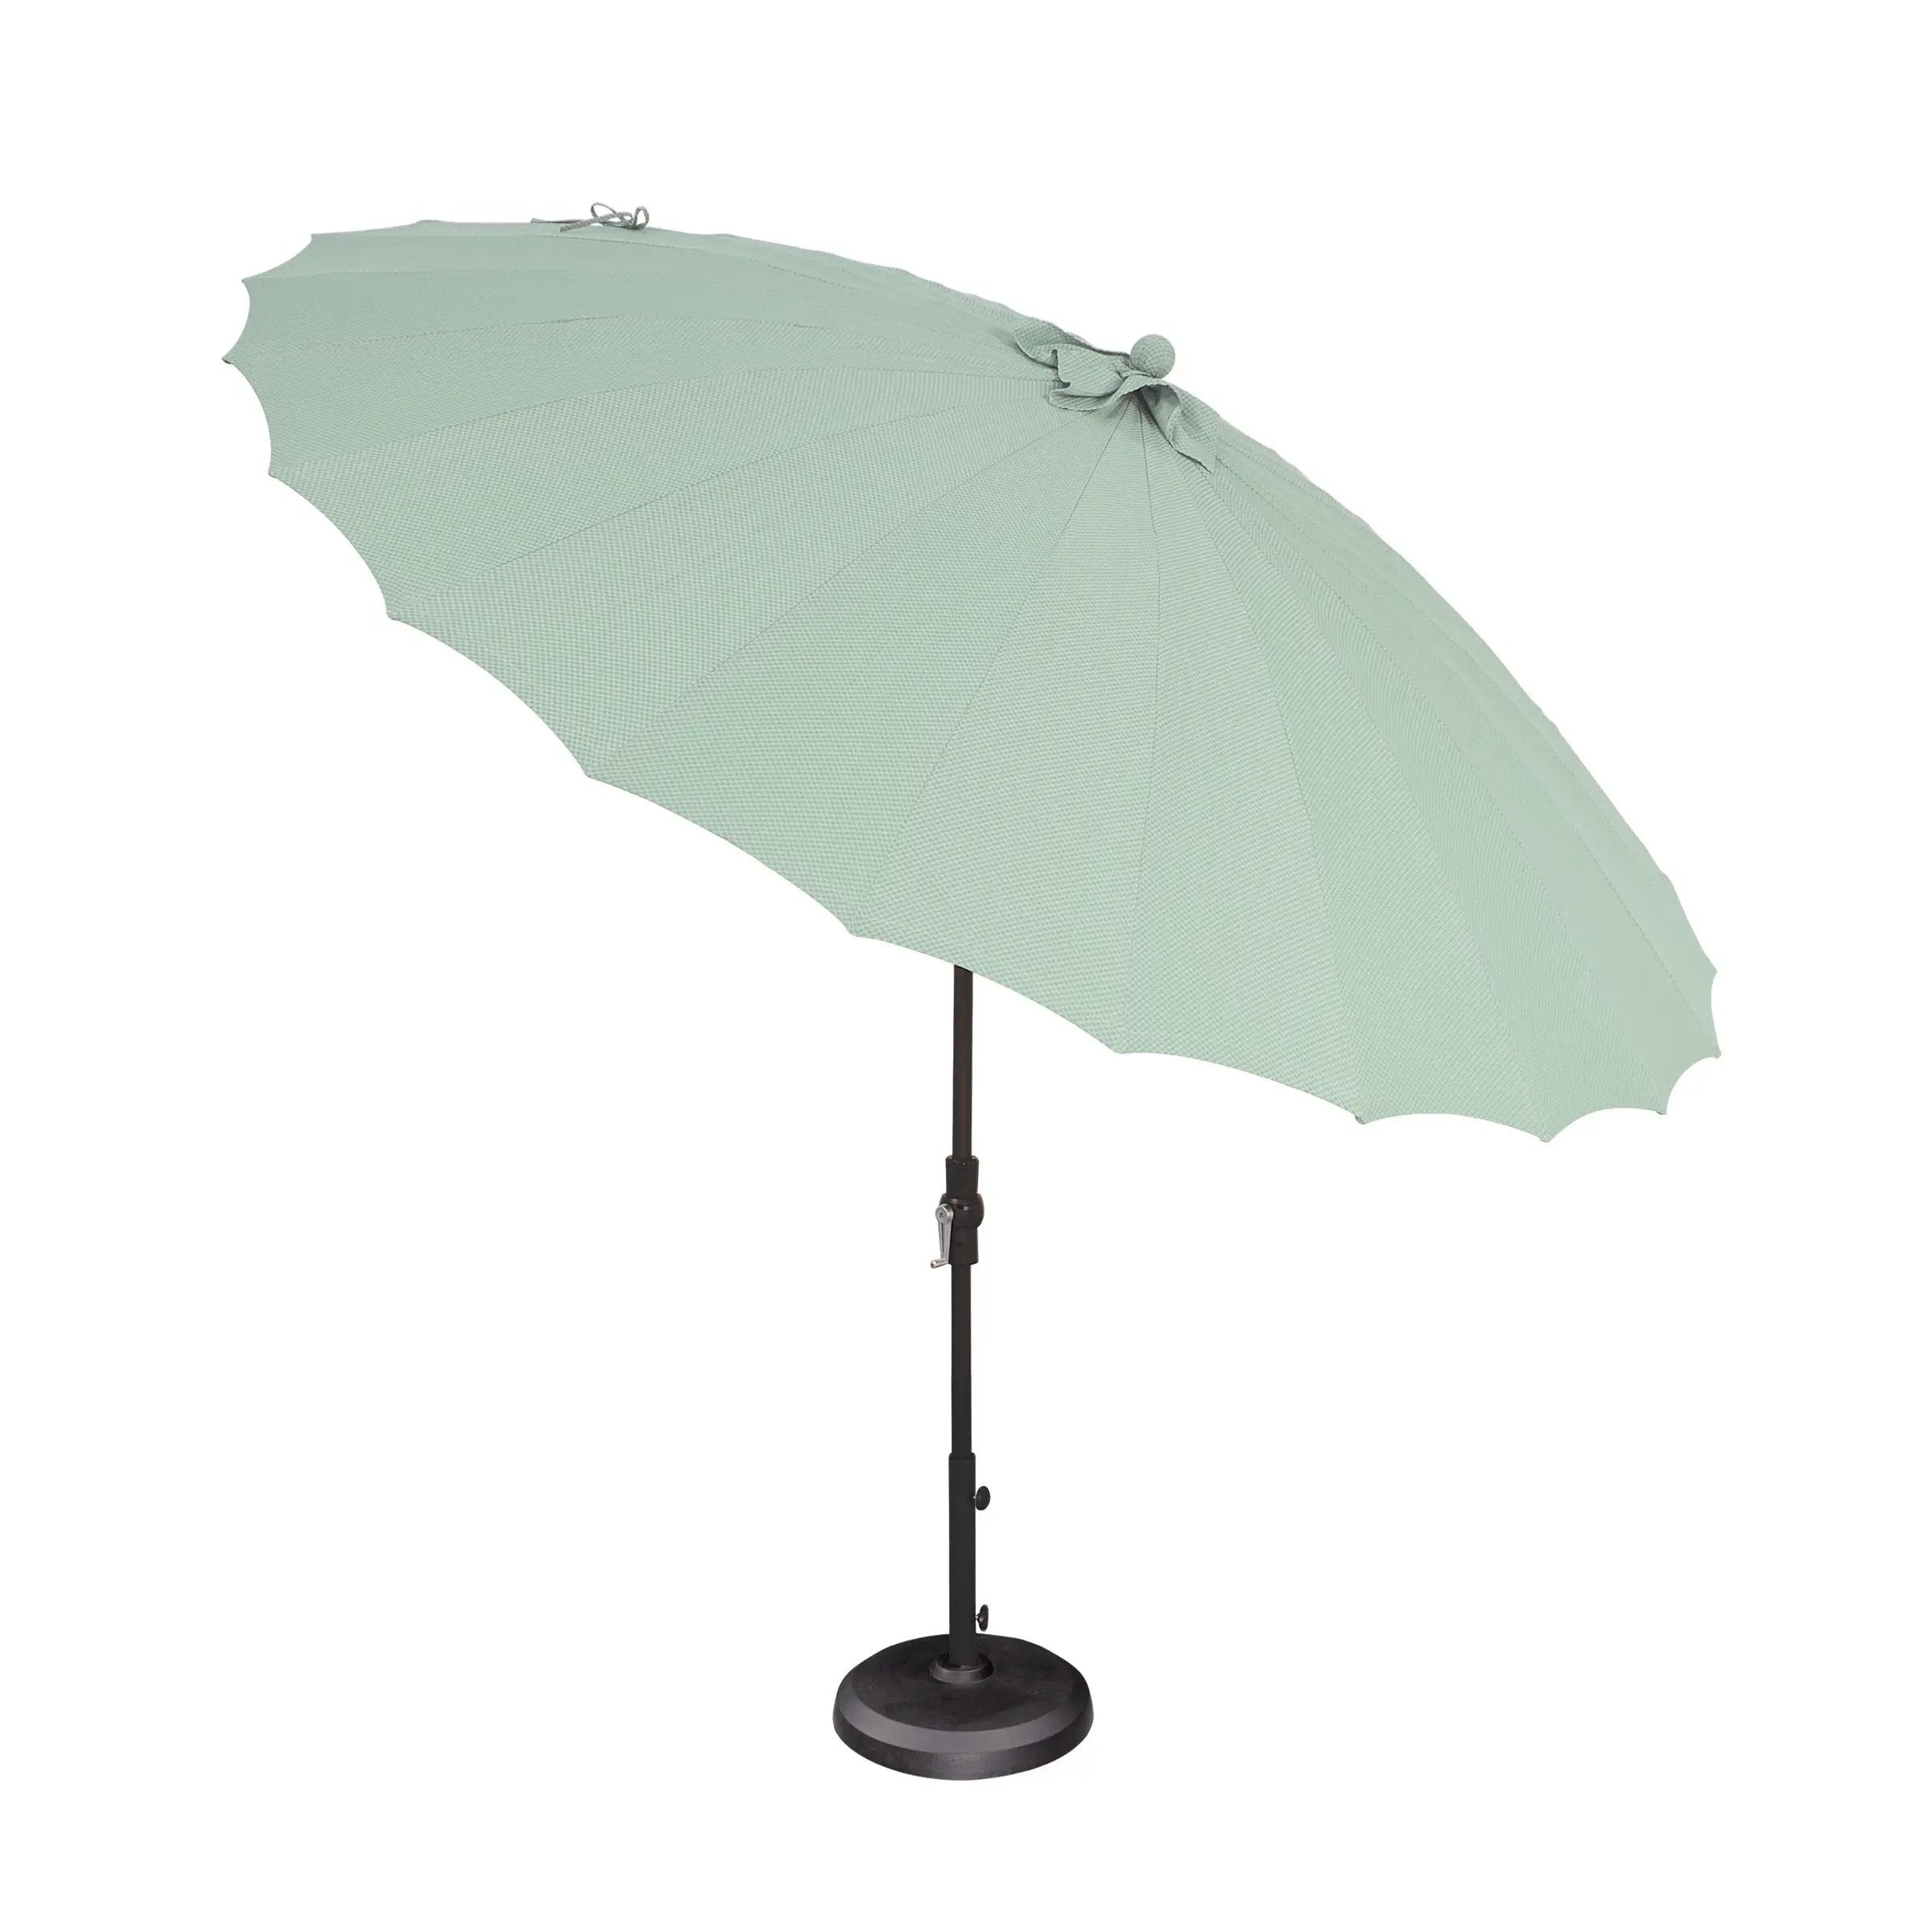 SHANGHAI Collar Tilt Umbrella